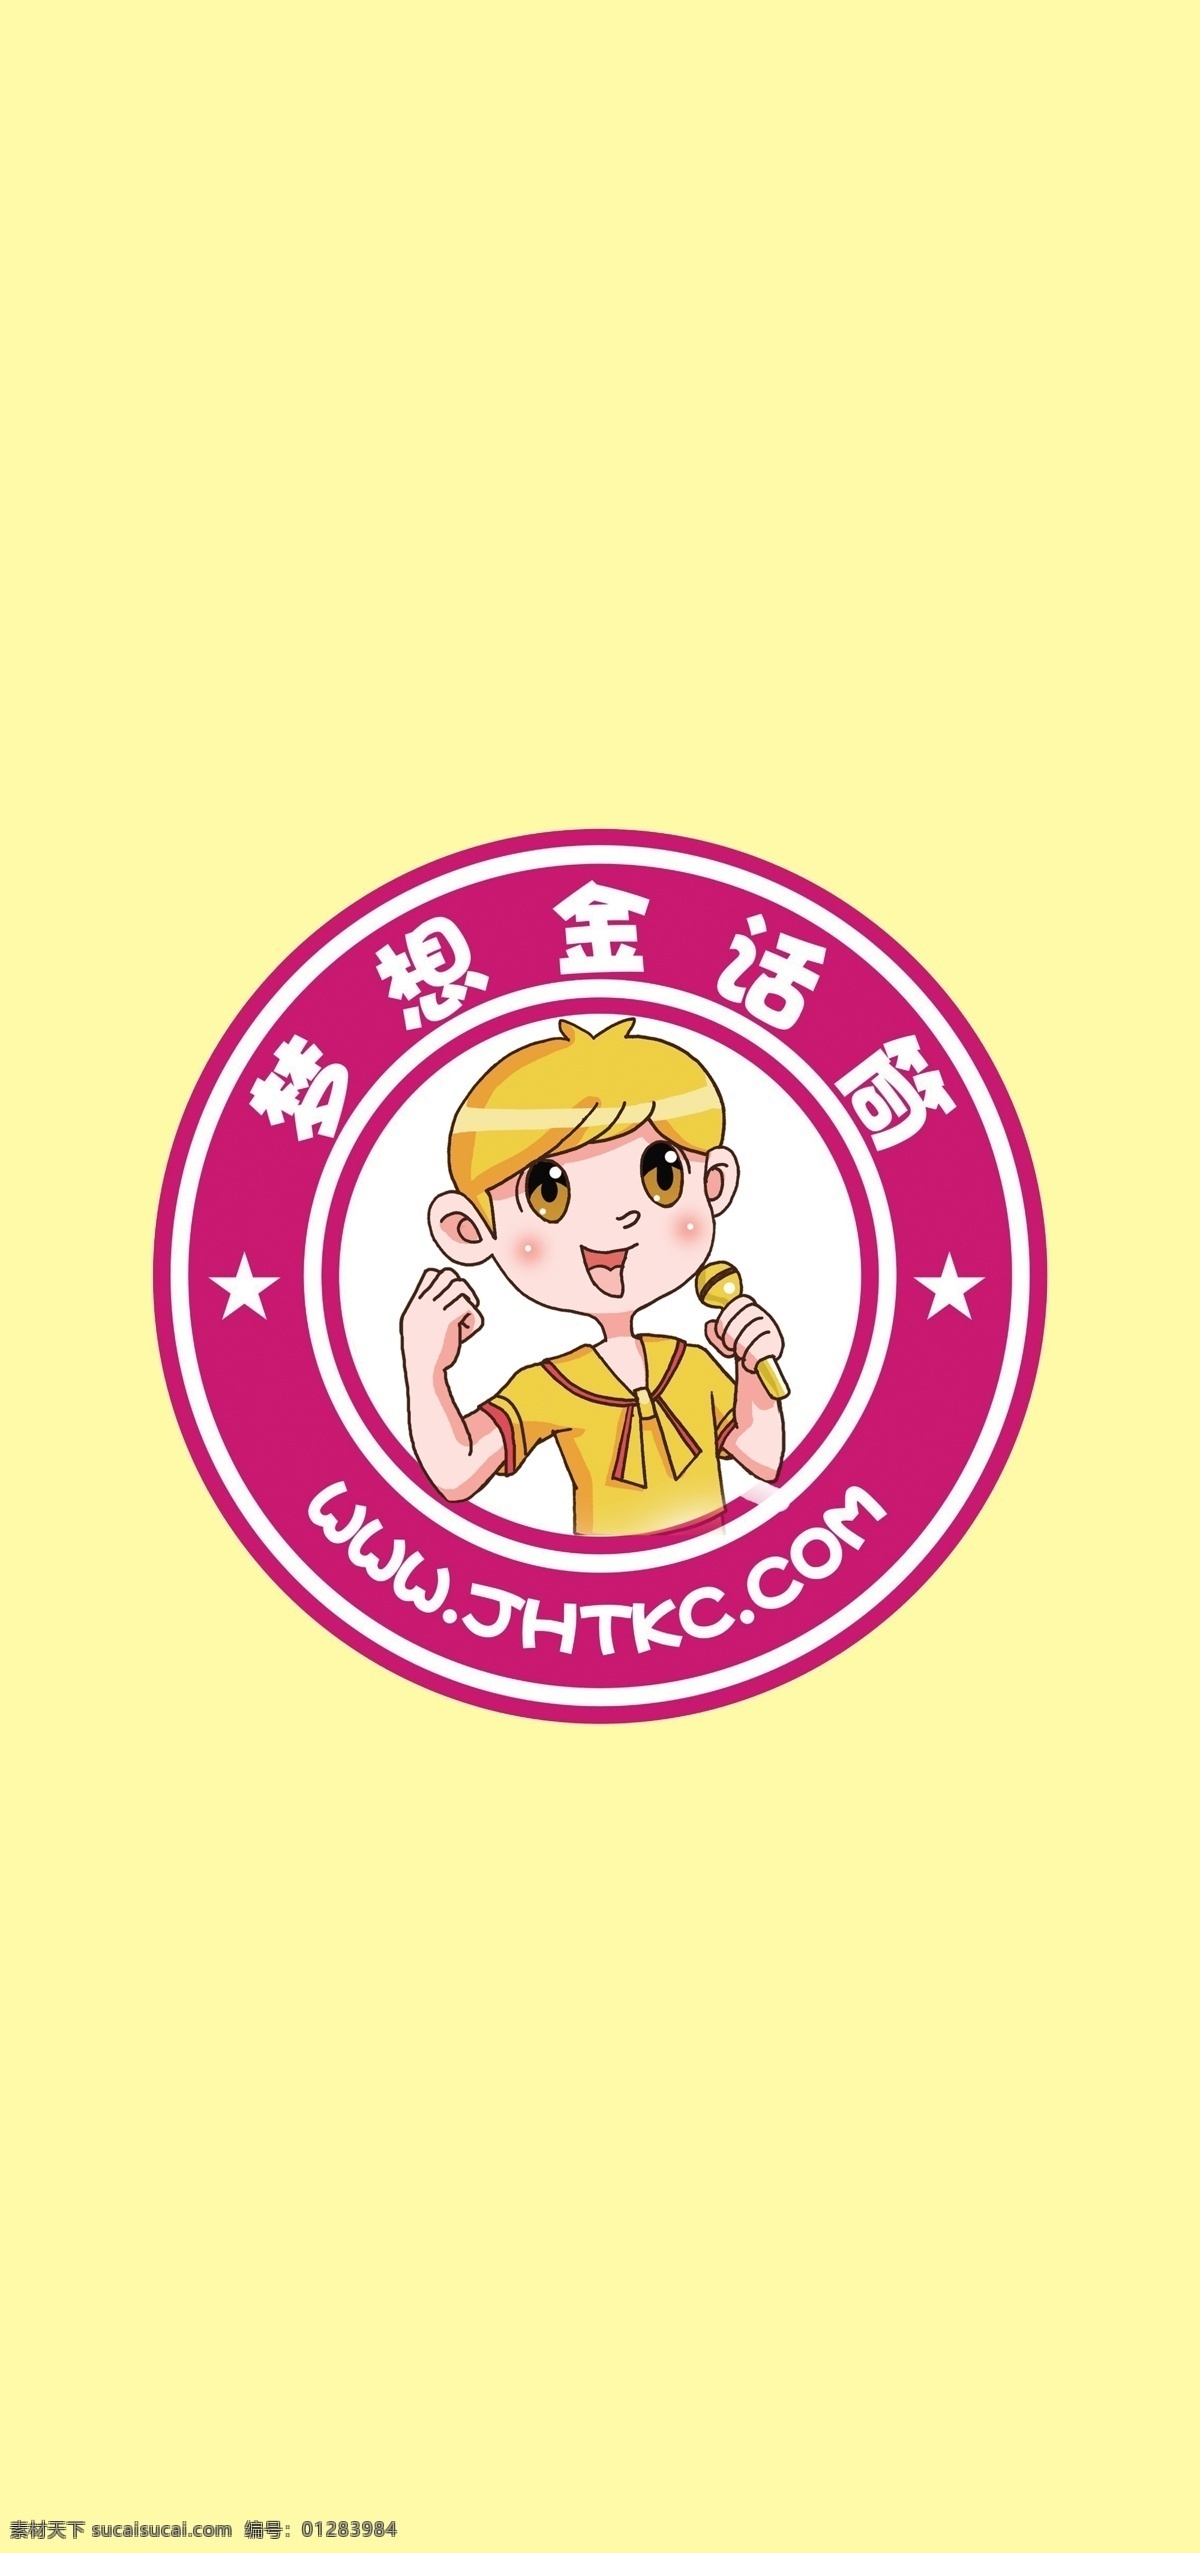 梦想 金 话筒 logo 卡通 标志 圆形 小女孩 唱歌 logo设计